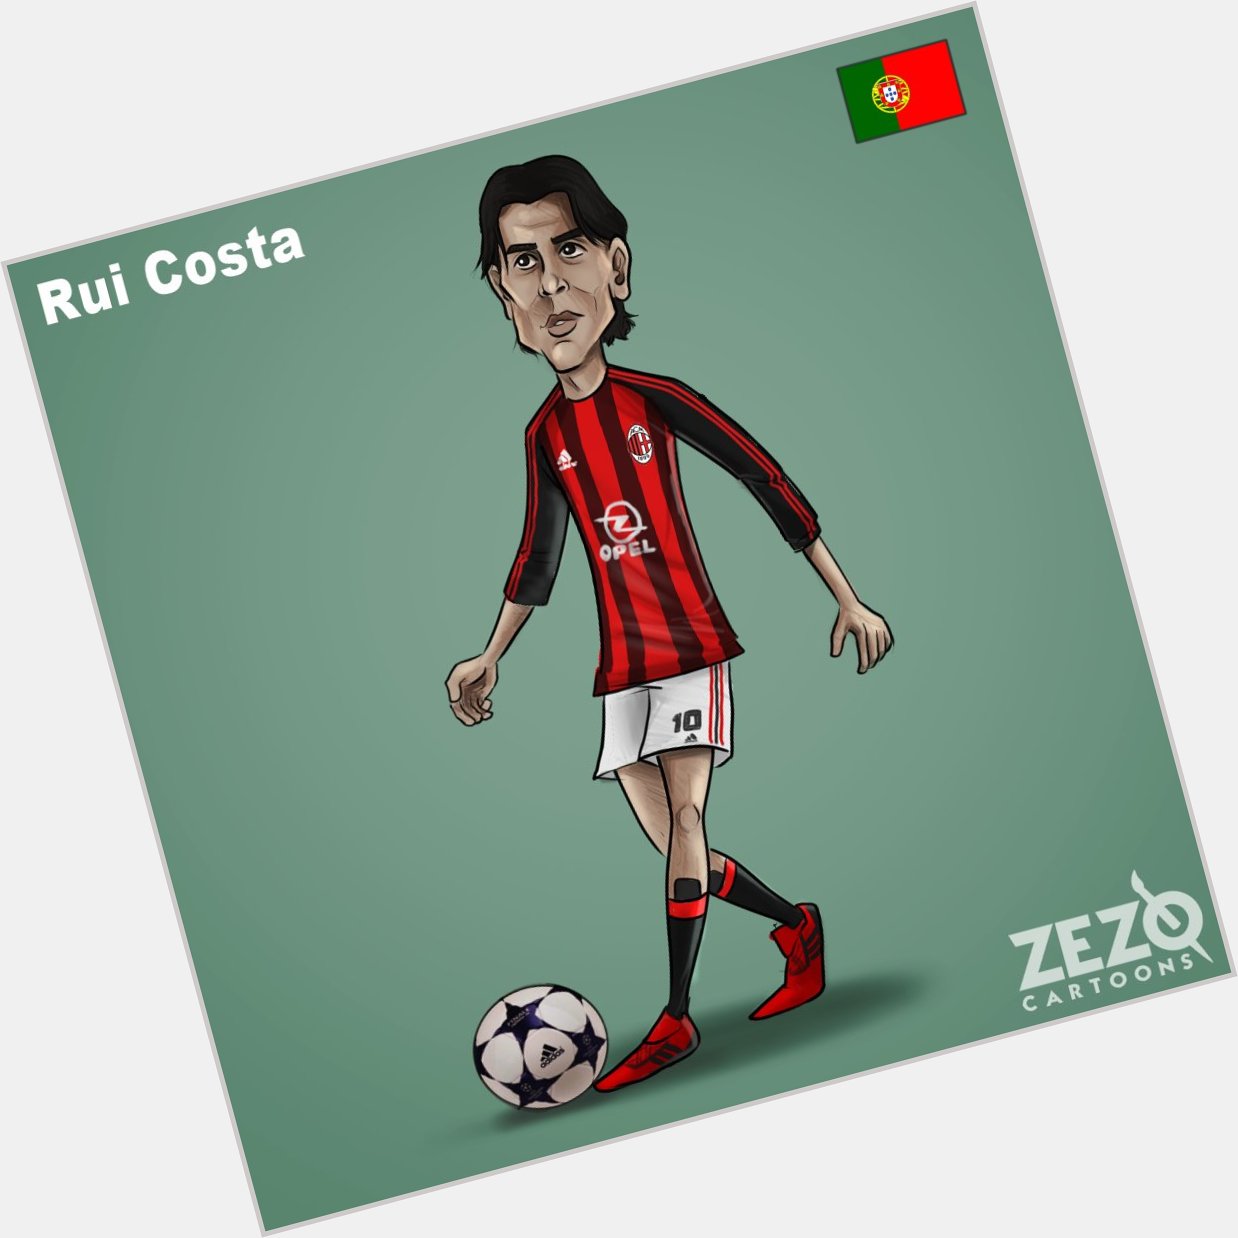 Happy 45th birthday to Rui Costa 